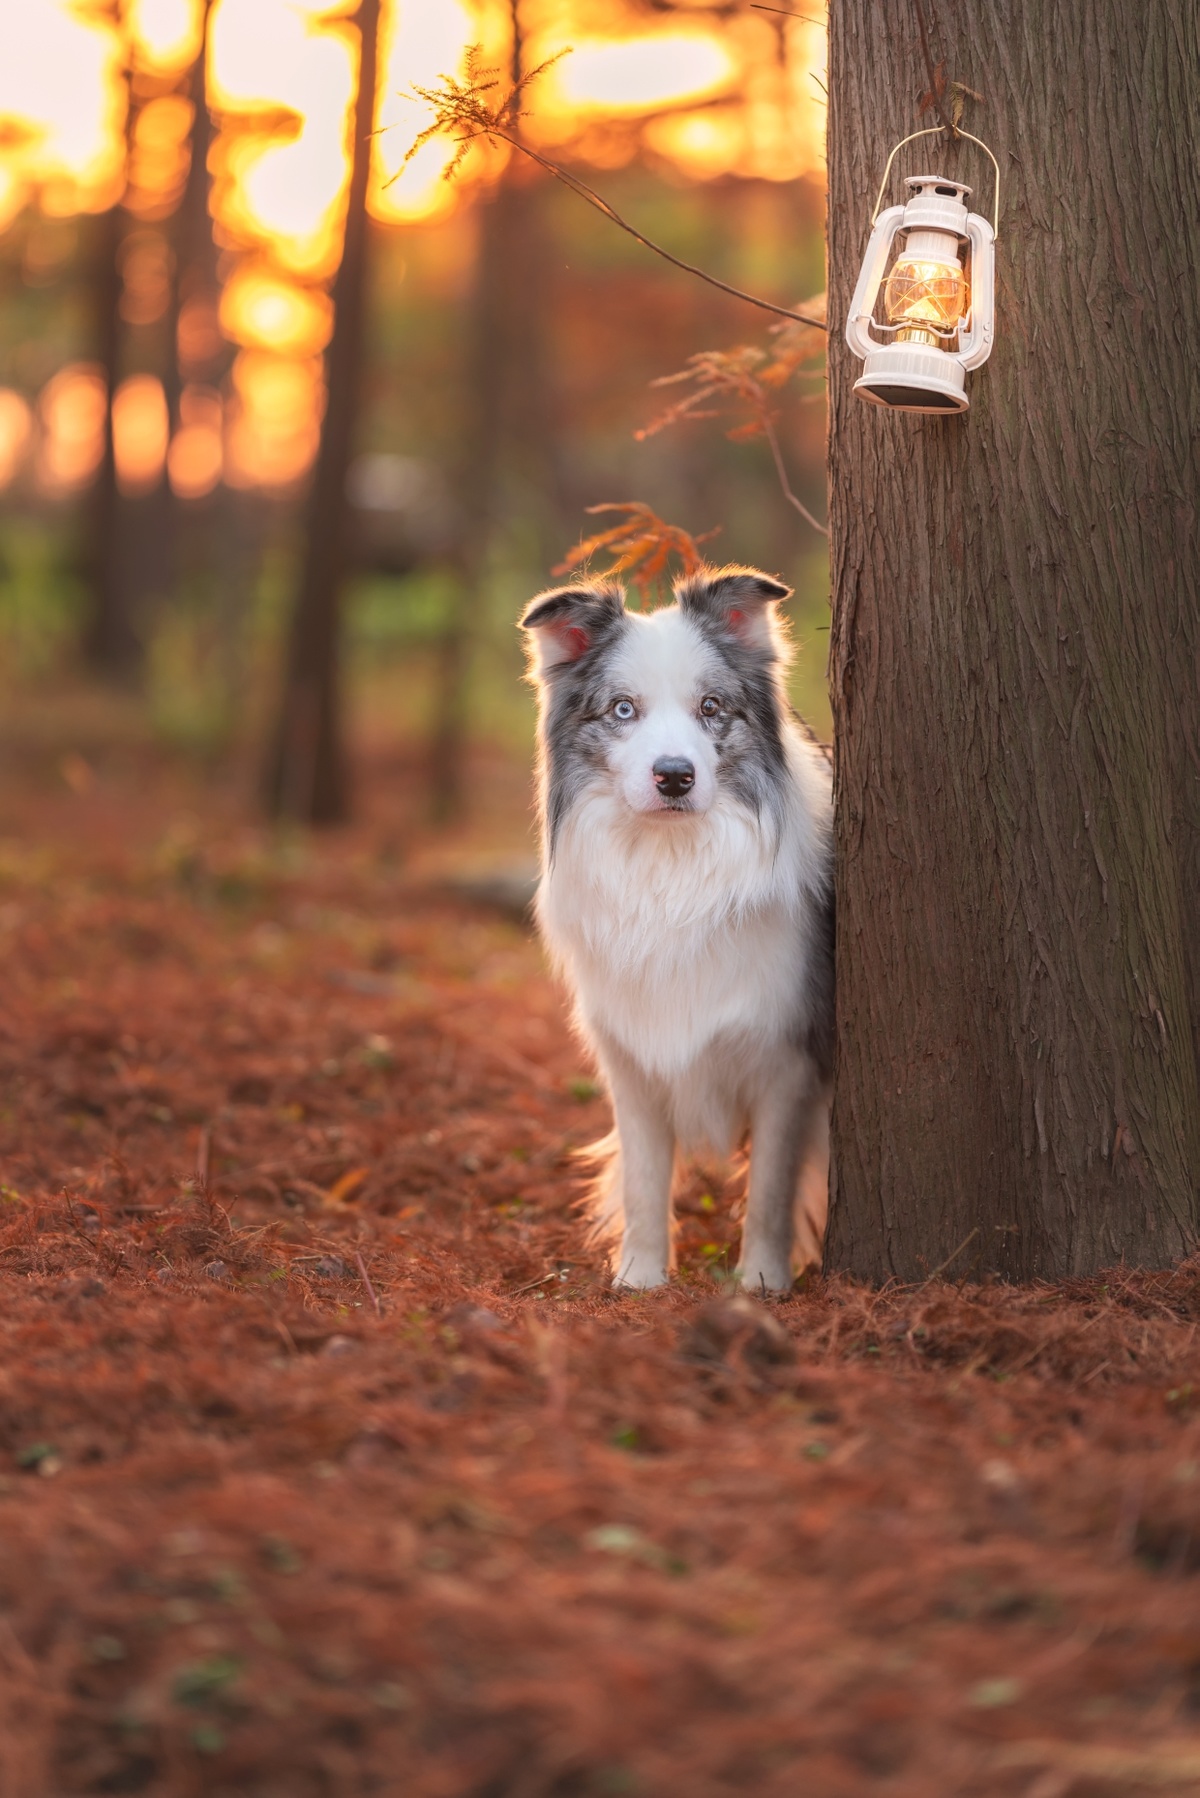 夕阳西下时 一只狗站在森林中的一棵树旁边